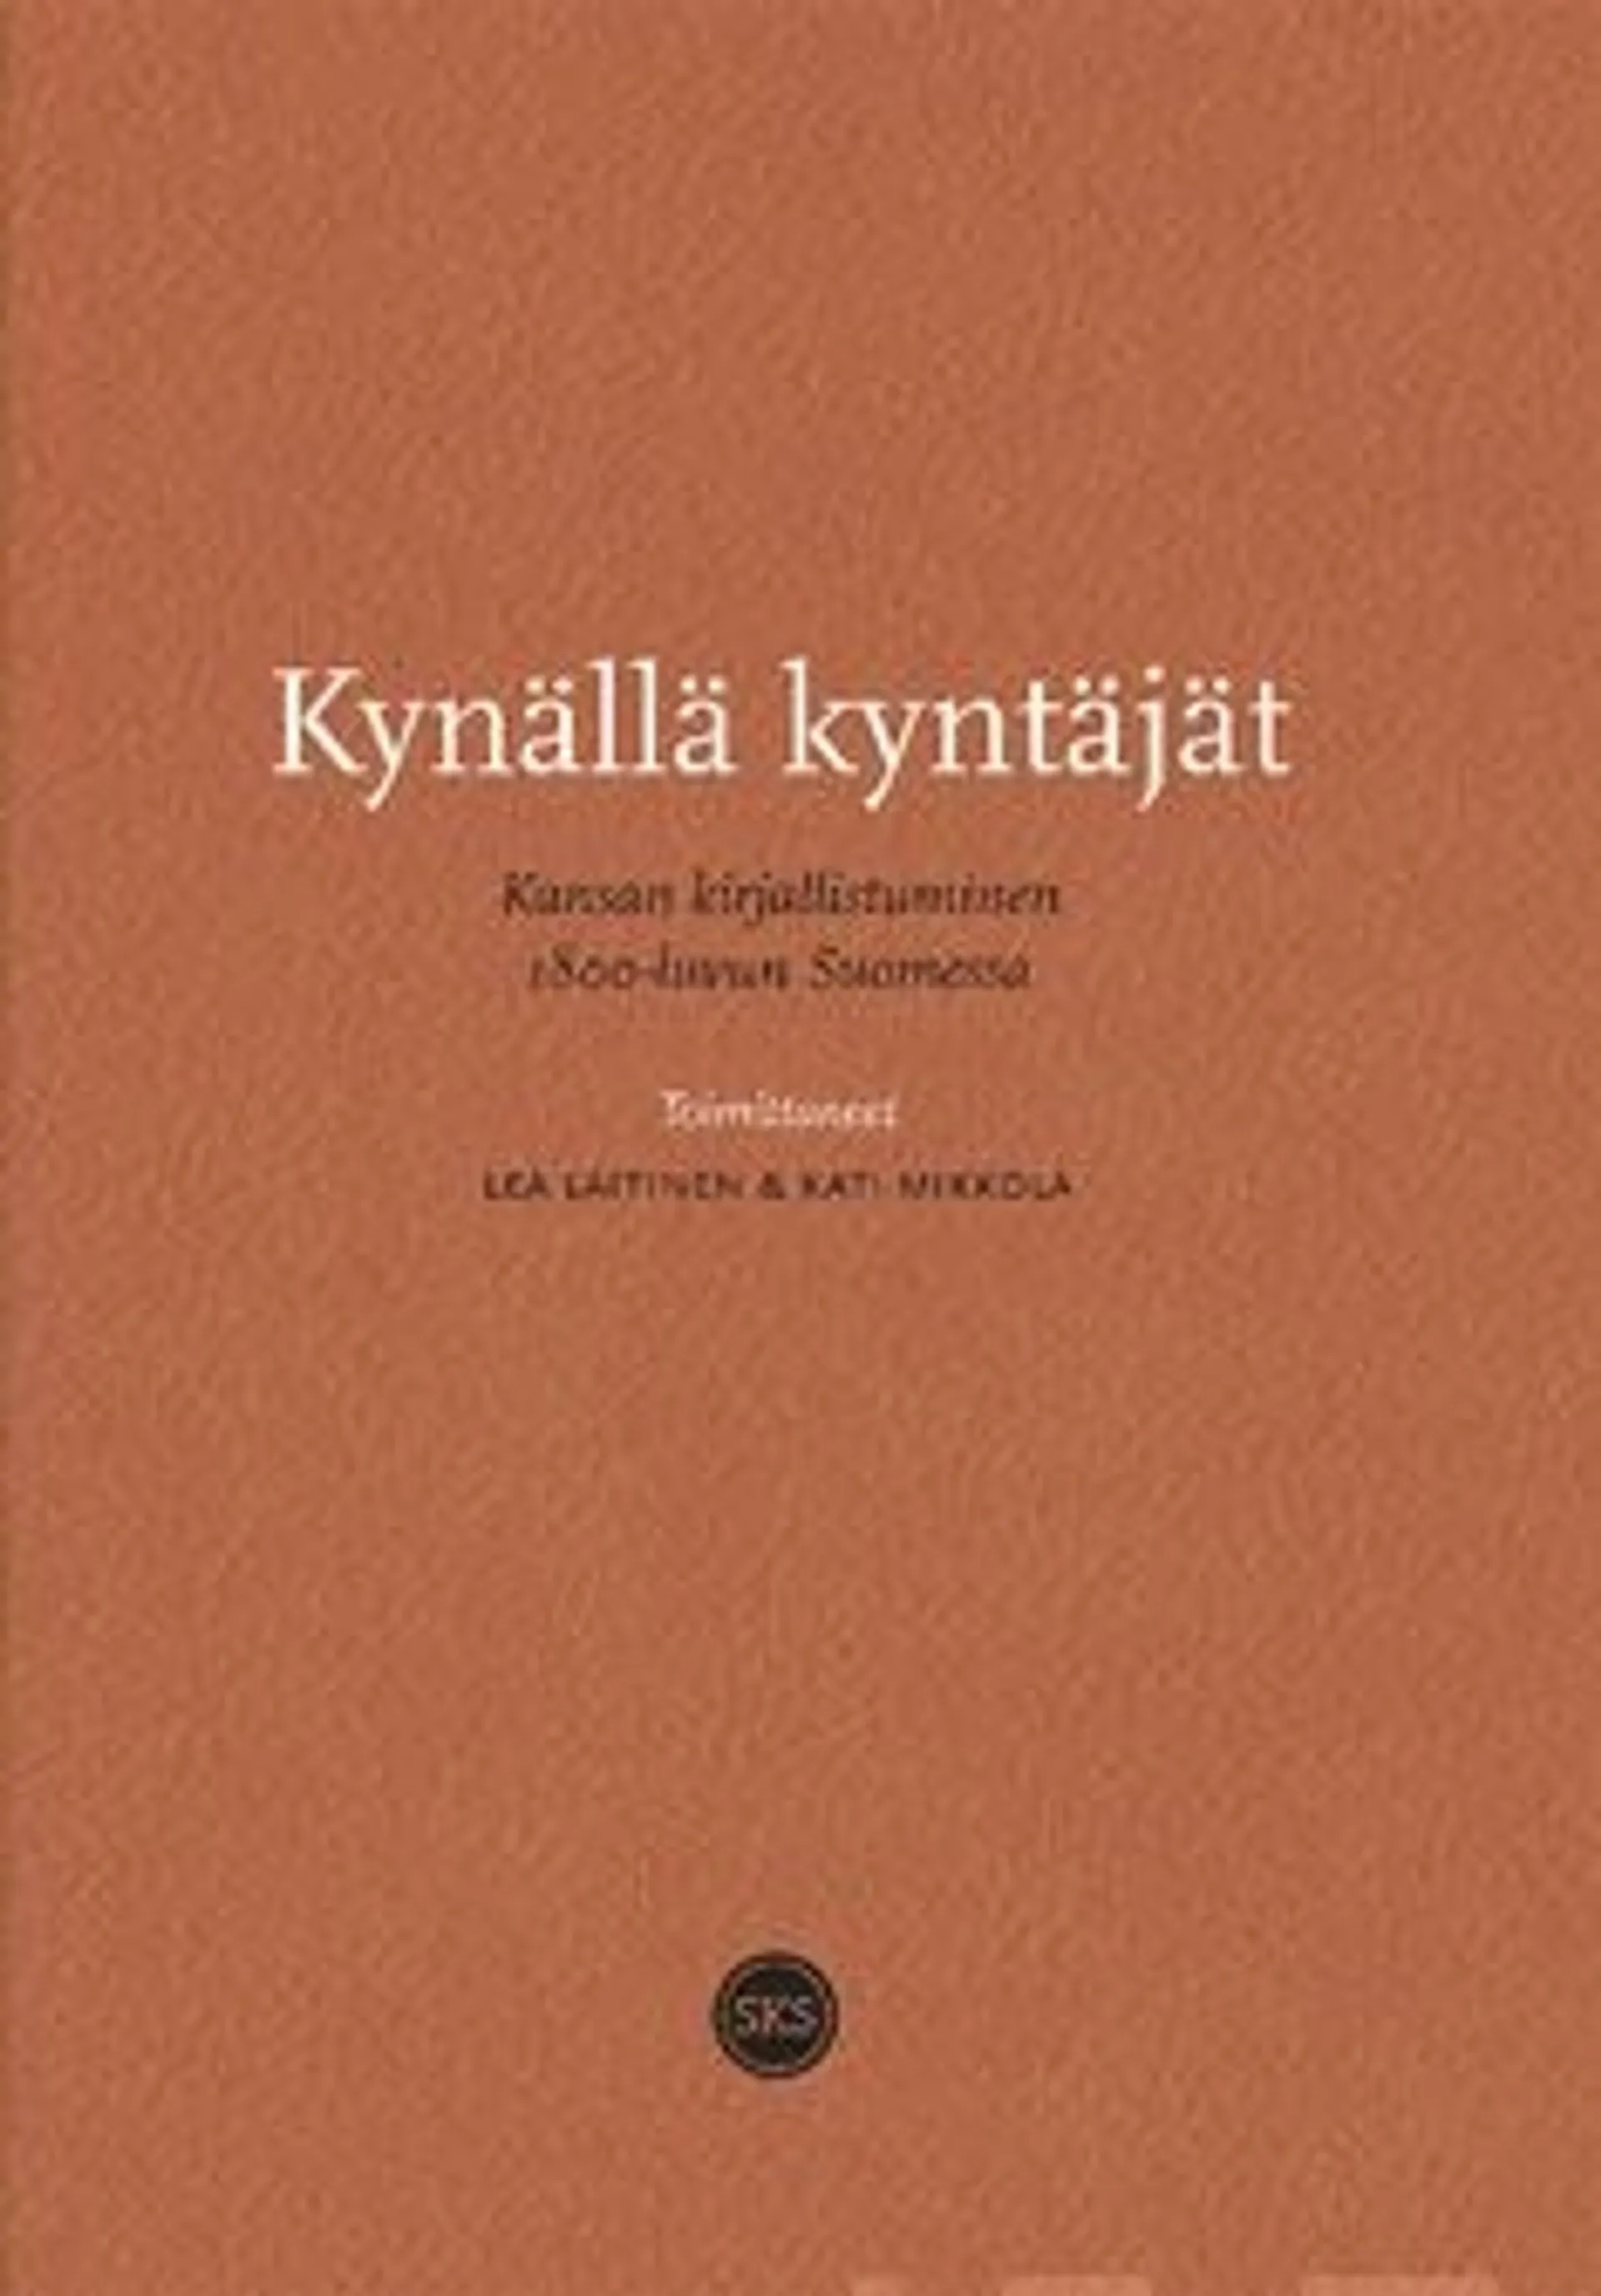 Kynällä kyntäjät - Kansan kirjallistuminen 1800-luvun Suomessa